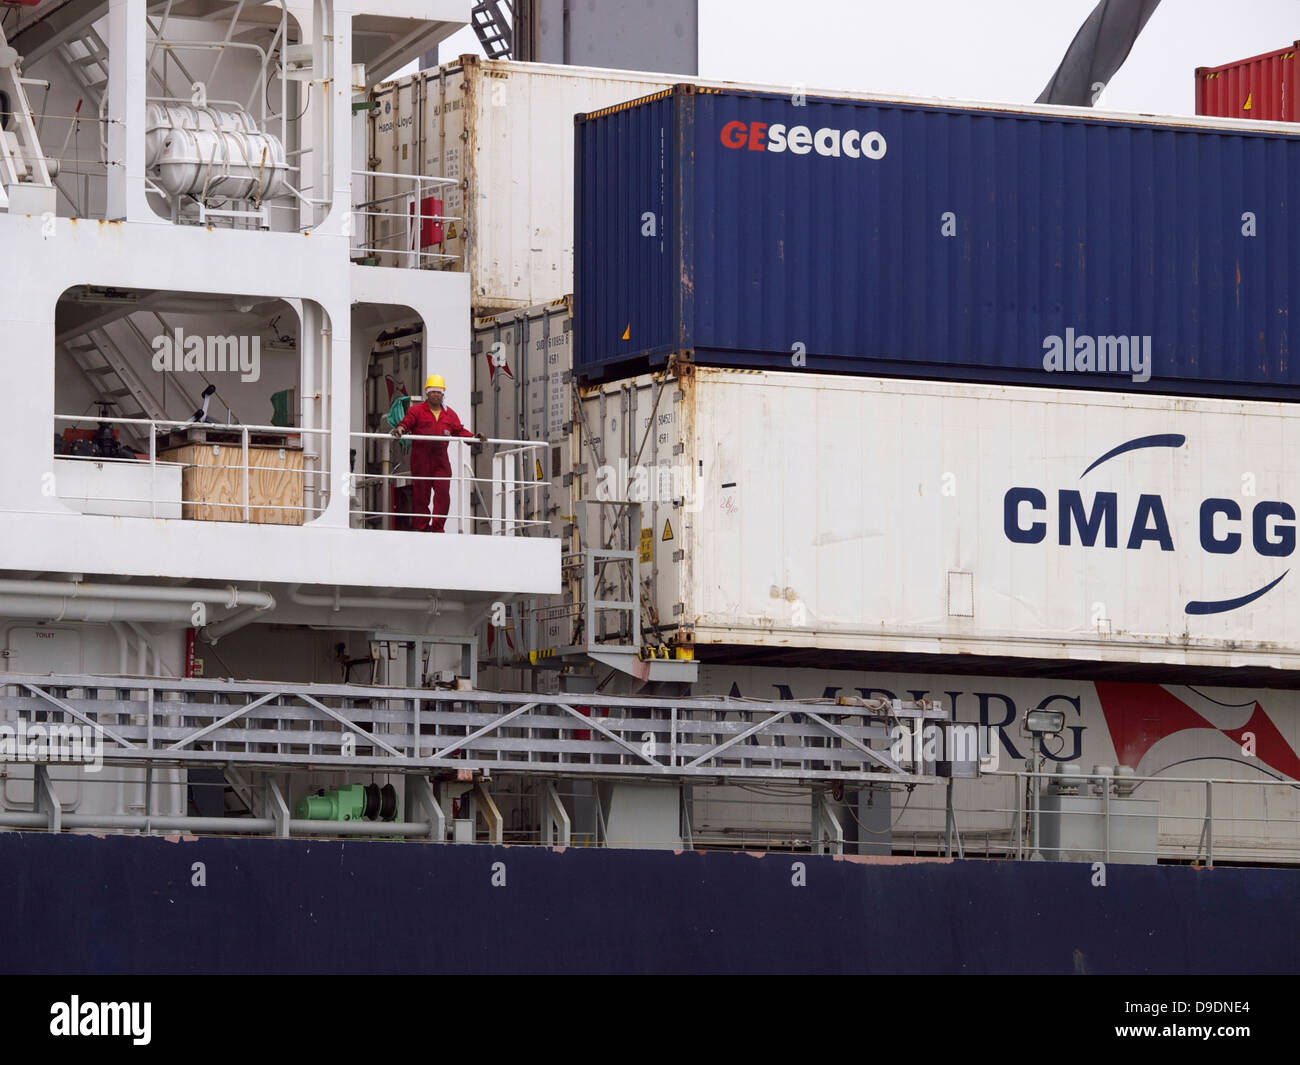 Matrose auf einem sehr großen Container Carrier Schiff stehen. Hafen von Rotterdam, die Niederlande Stockfoto